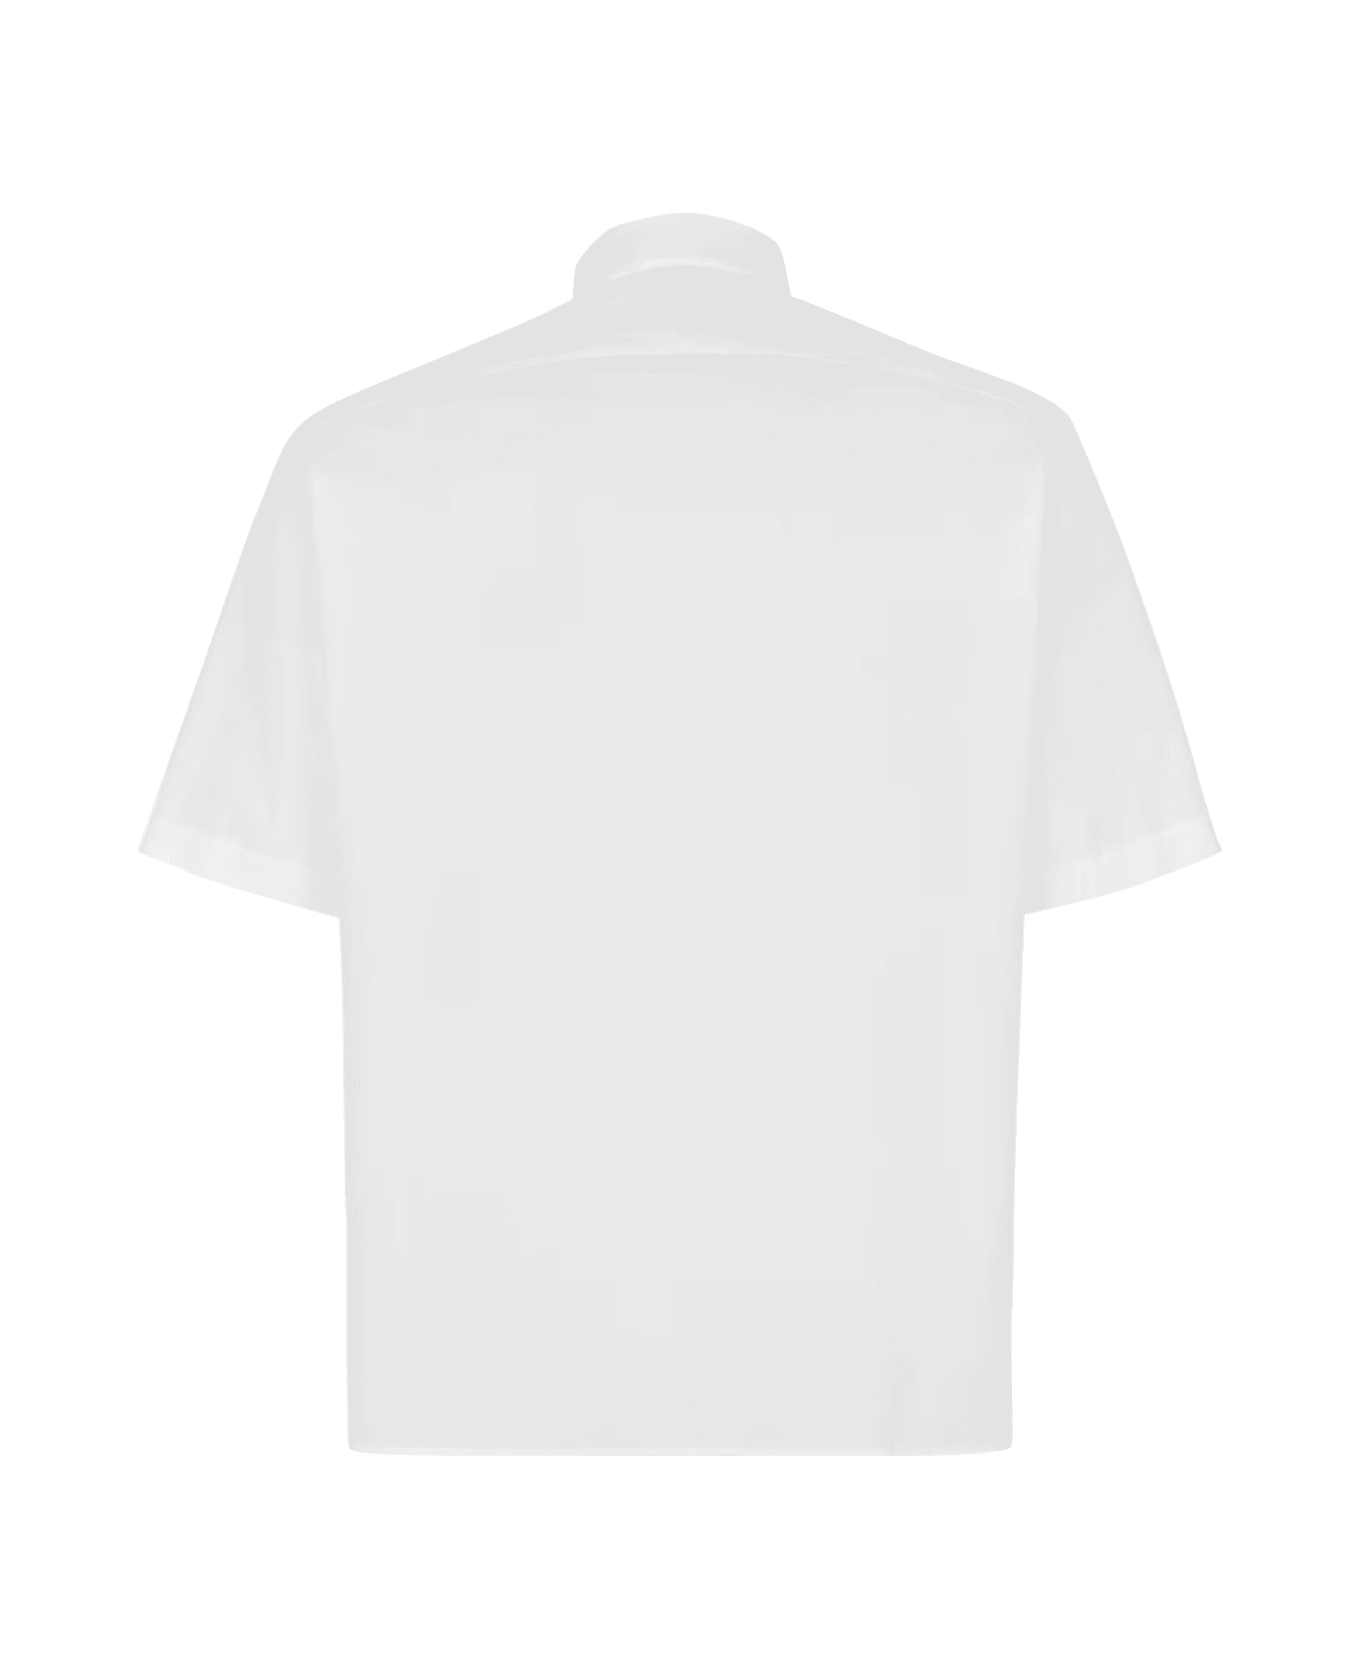 Fendi Shirt Co Roma Pocket - White シャツ